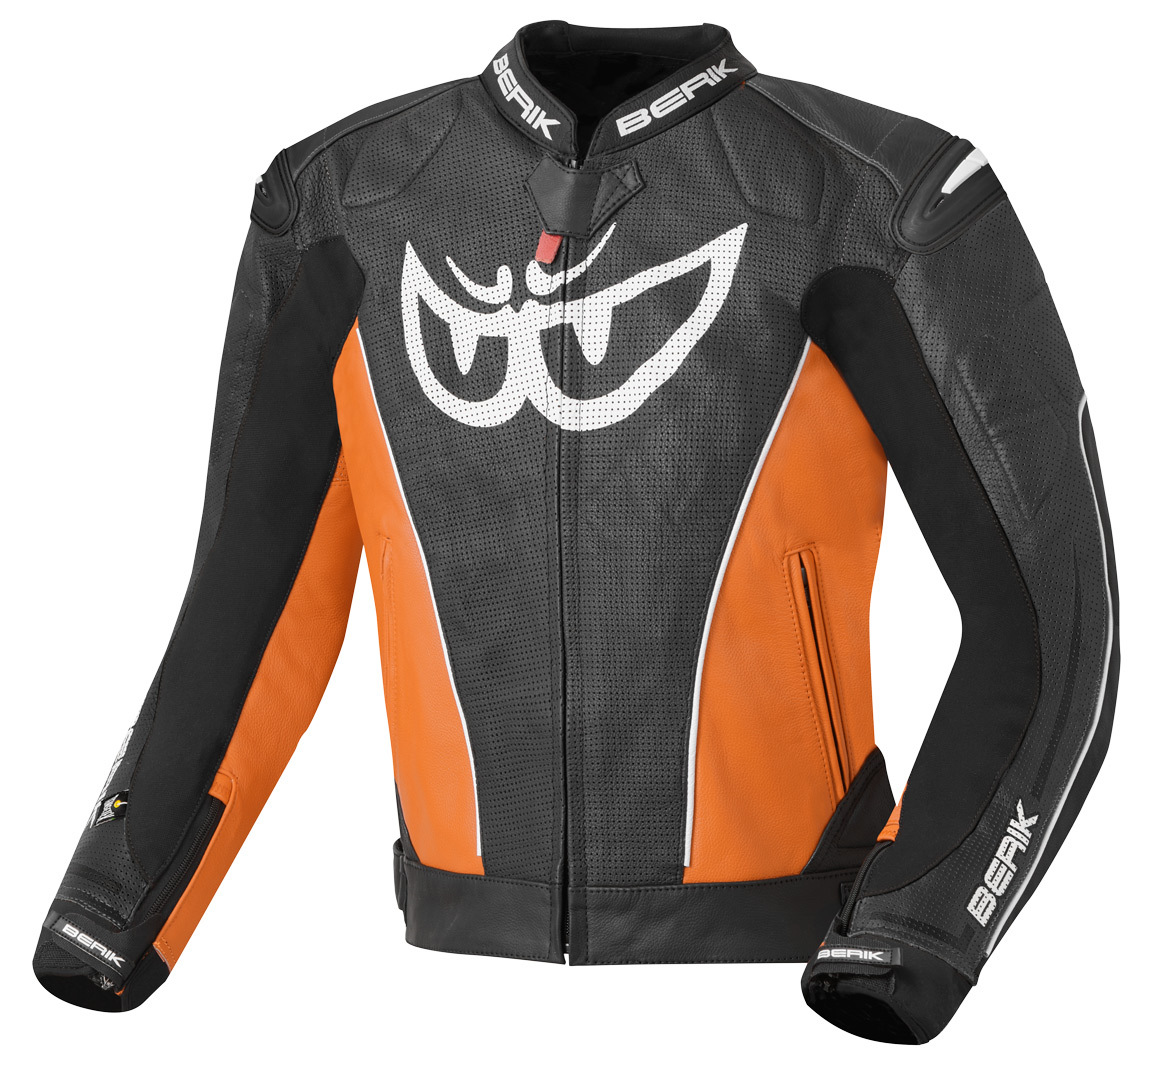 Мотоциклетная кожаная куртка Berik Street с регулируемой талией и манжетами, черный/оранжевый